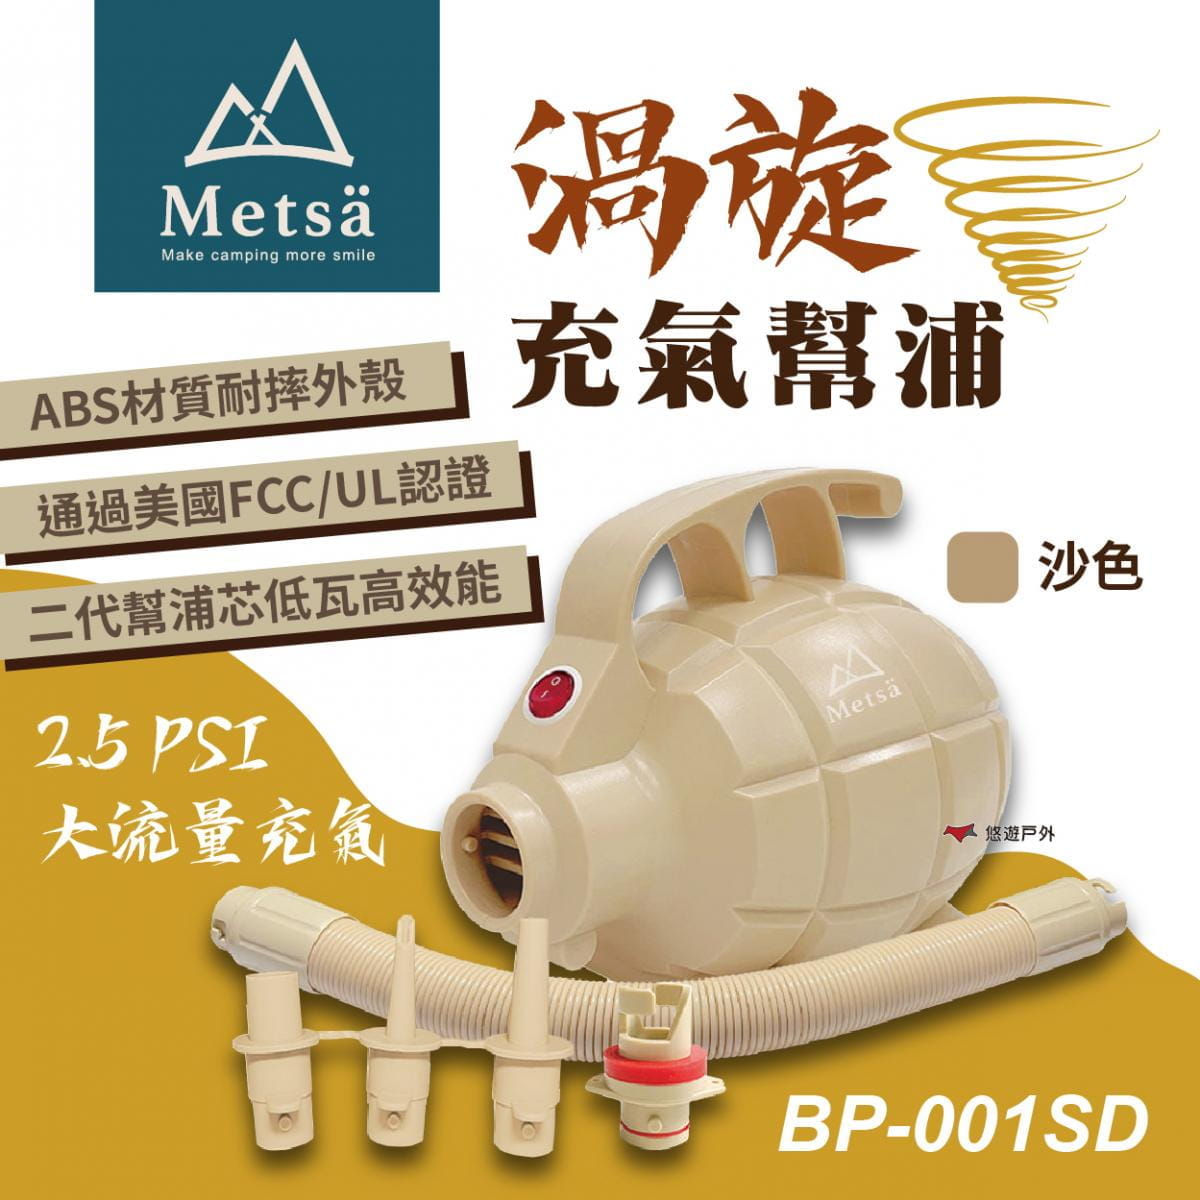 【Metsa米特薩】渦旋充氣幫浦 BP-001SD (悠遊戶外) 1